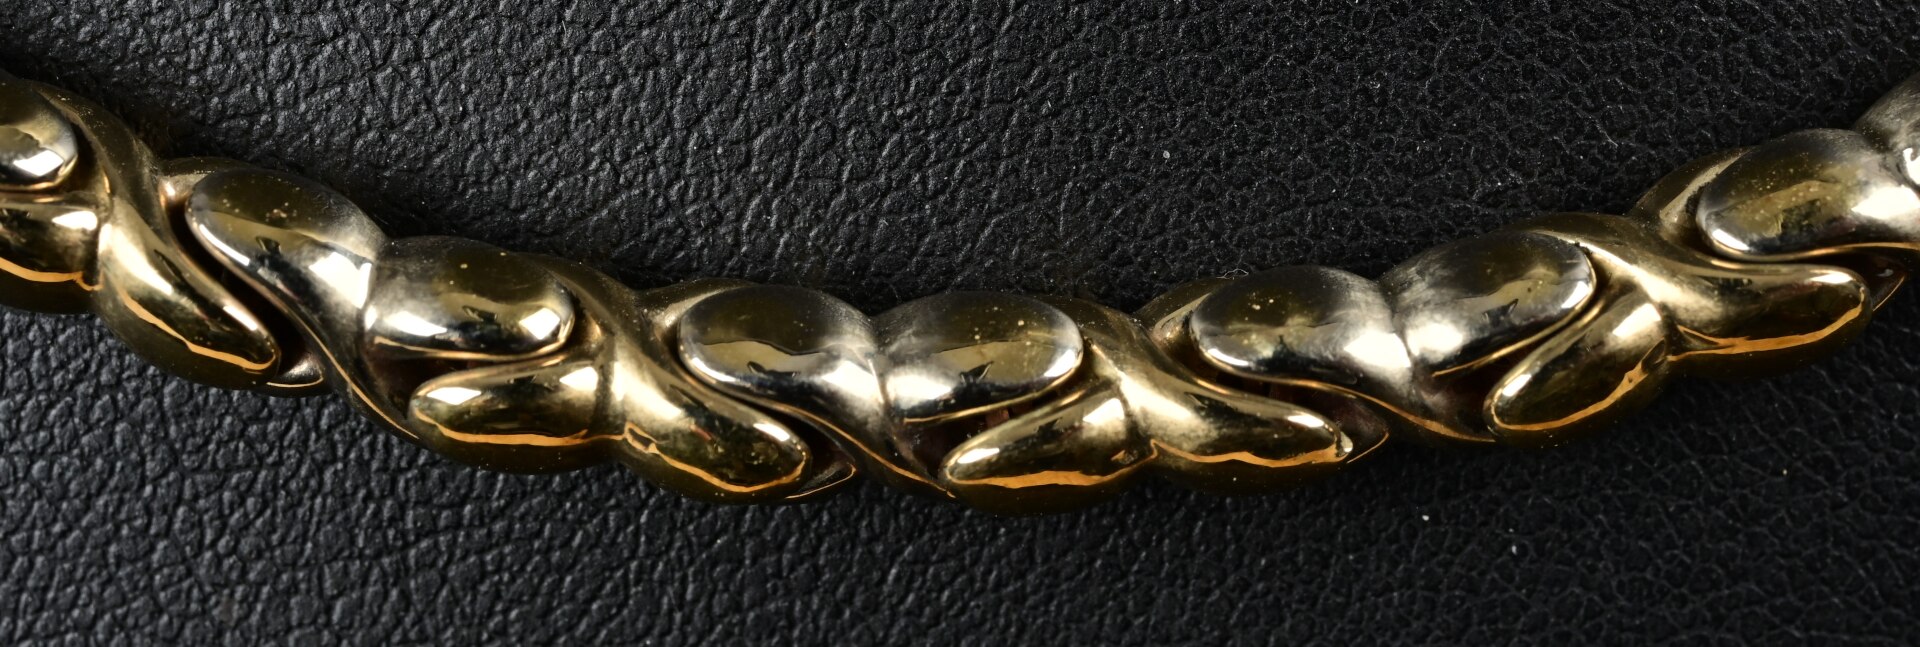 Halskette aus 585er Gelbgold; ziemlich stark miteinander verbundene, wie geflochtene, ovale Glieder - Image 4 of 4